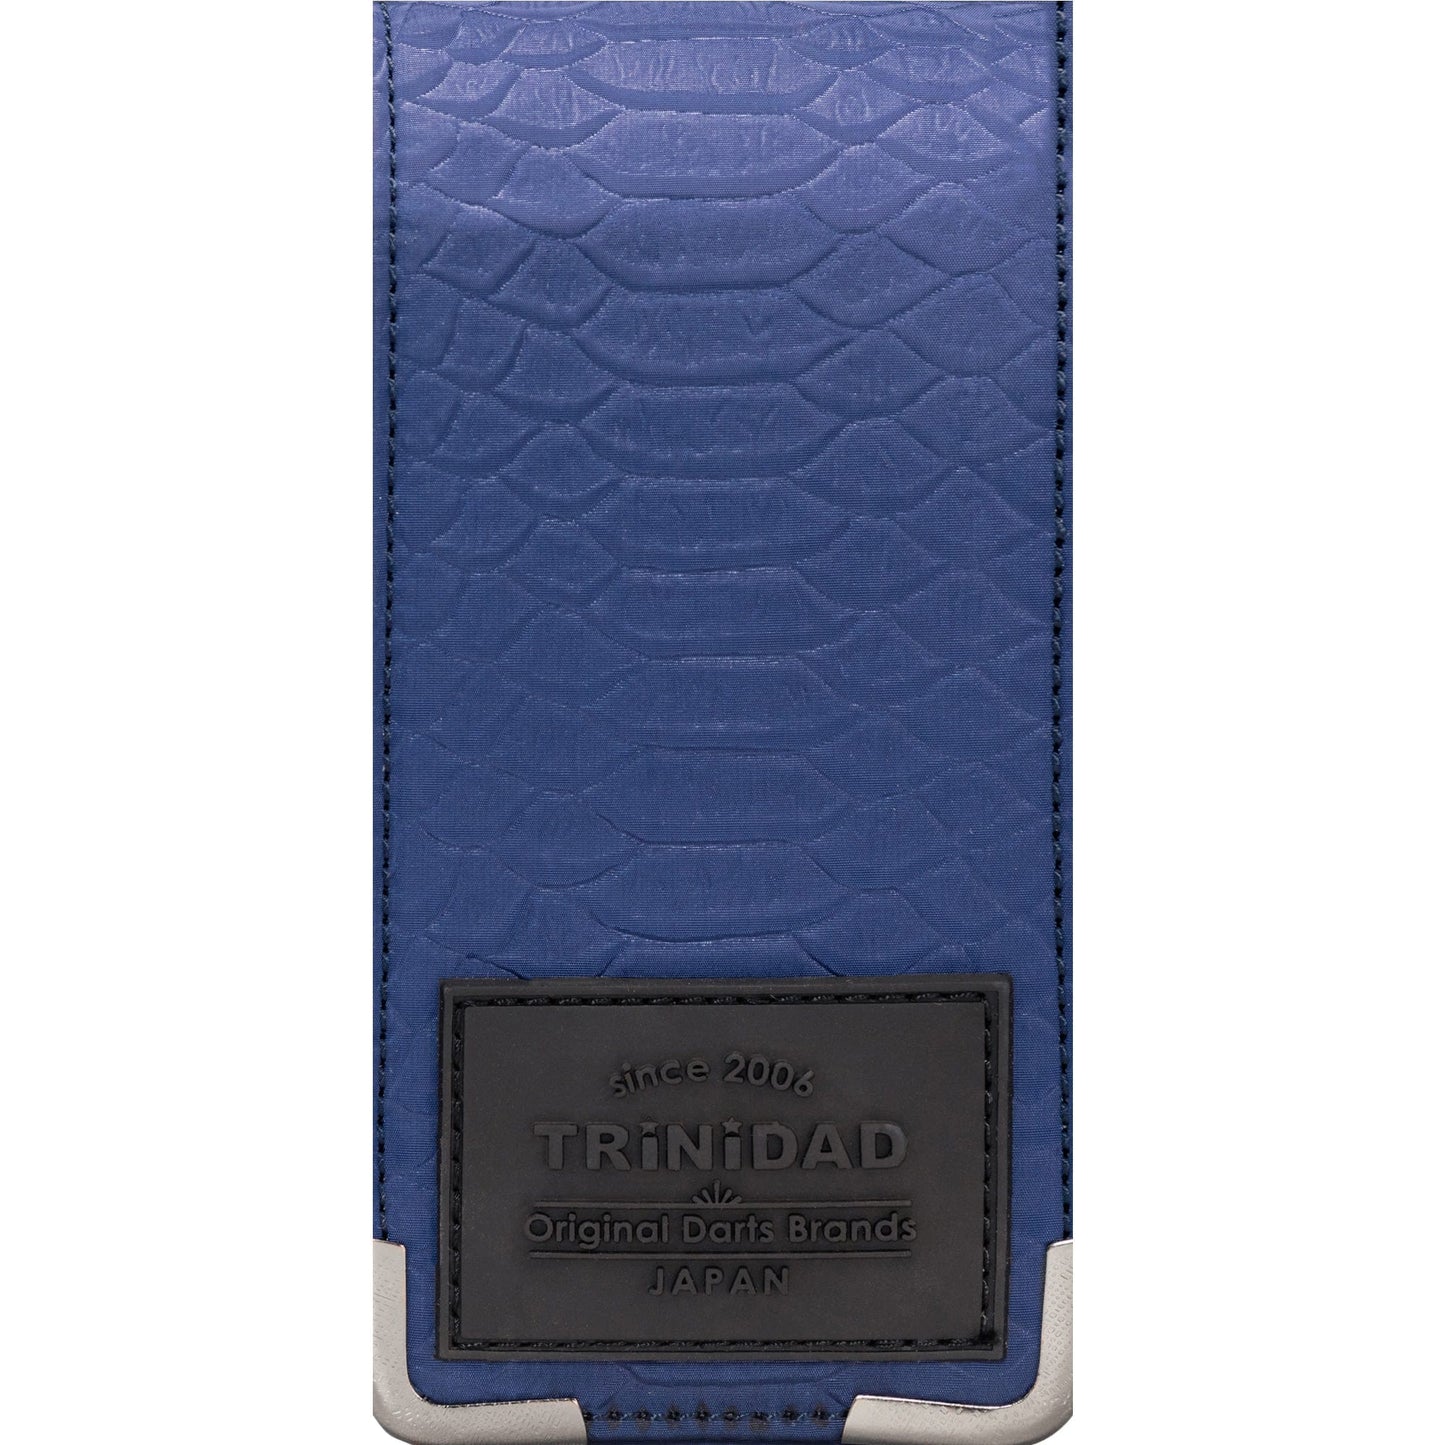 Condor Croco Dart Wallet - Large Darts Case - Plain Blue